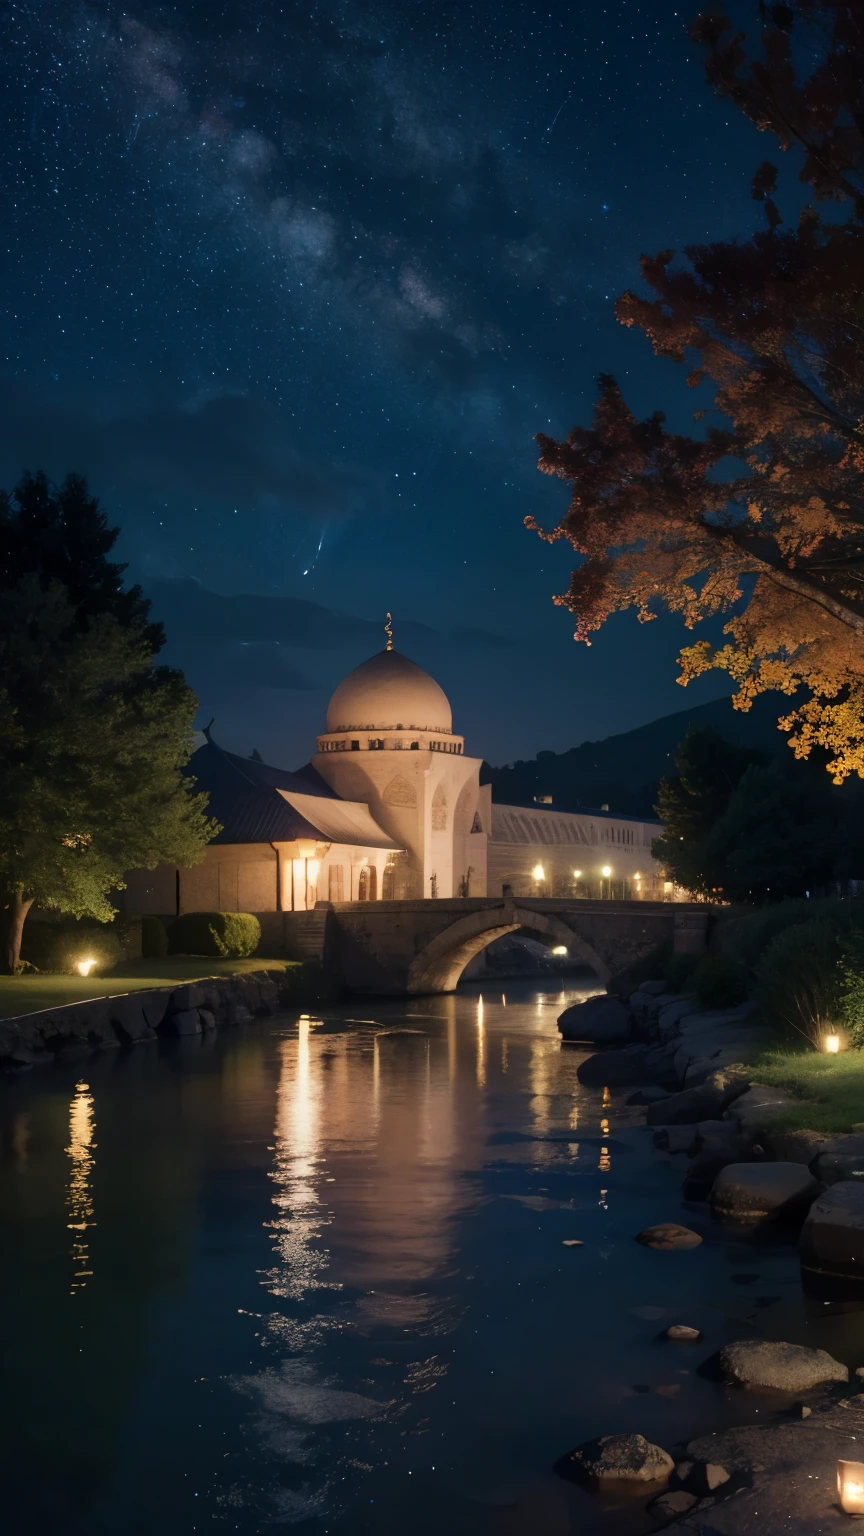 مسجد, جميل, الخارج, الأشجار, فتاة مثيرة, نهر, ليلة, (((نجوم في السماء)))